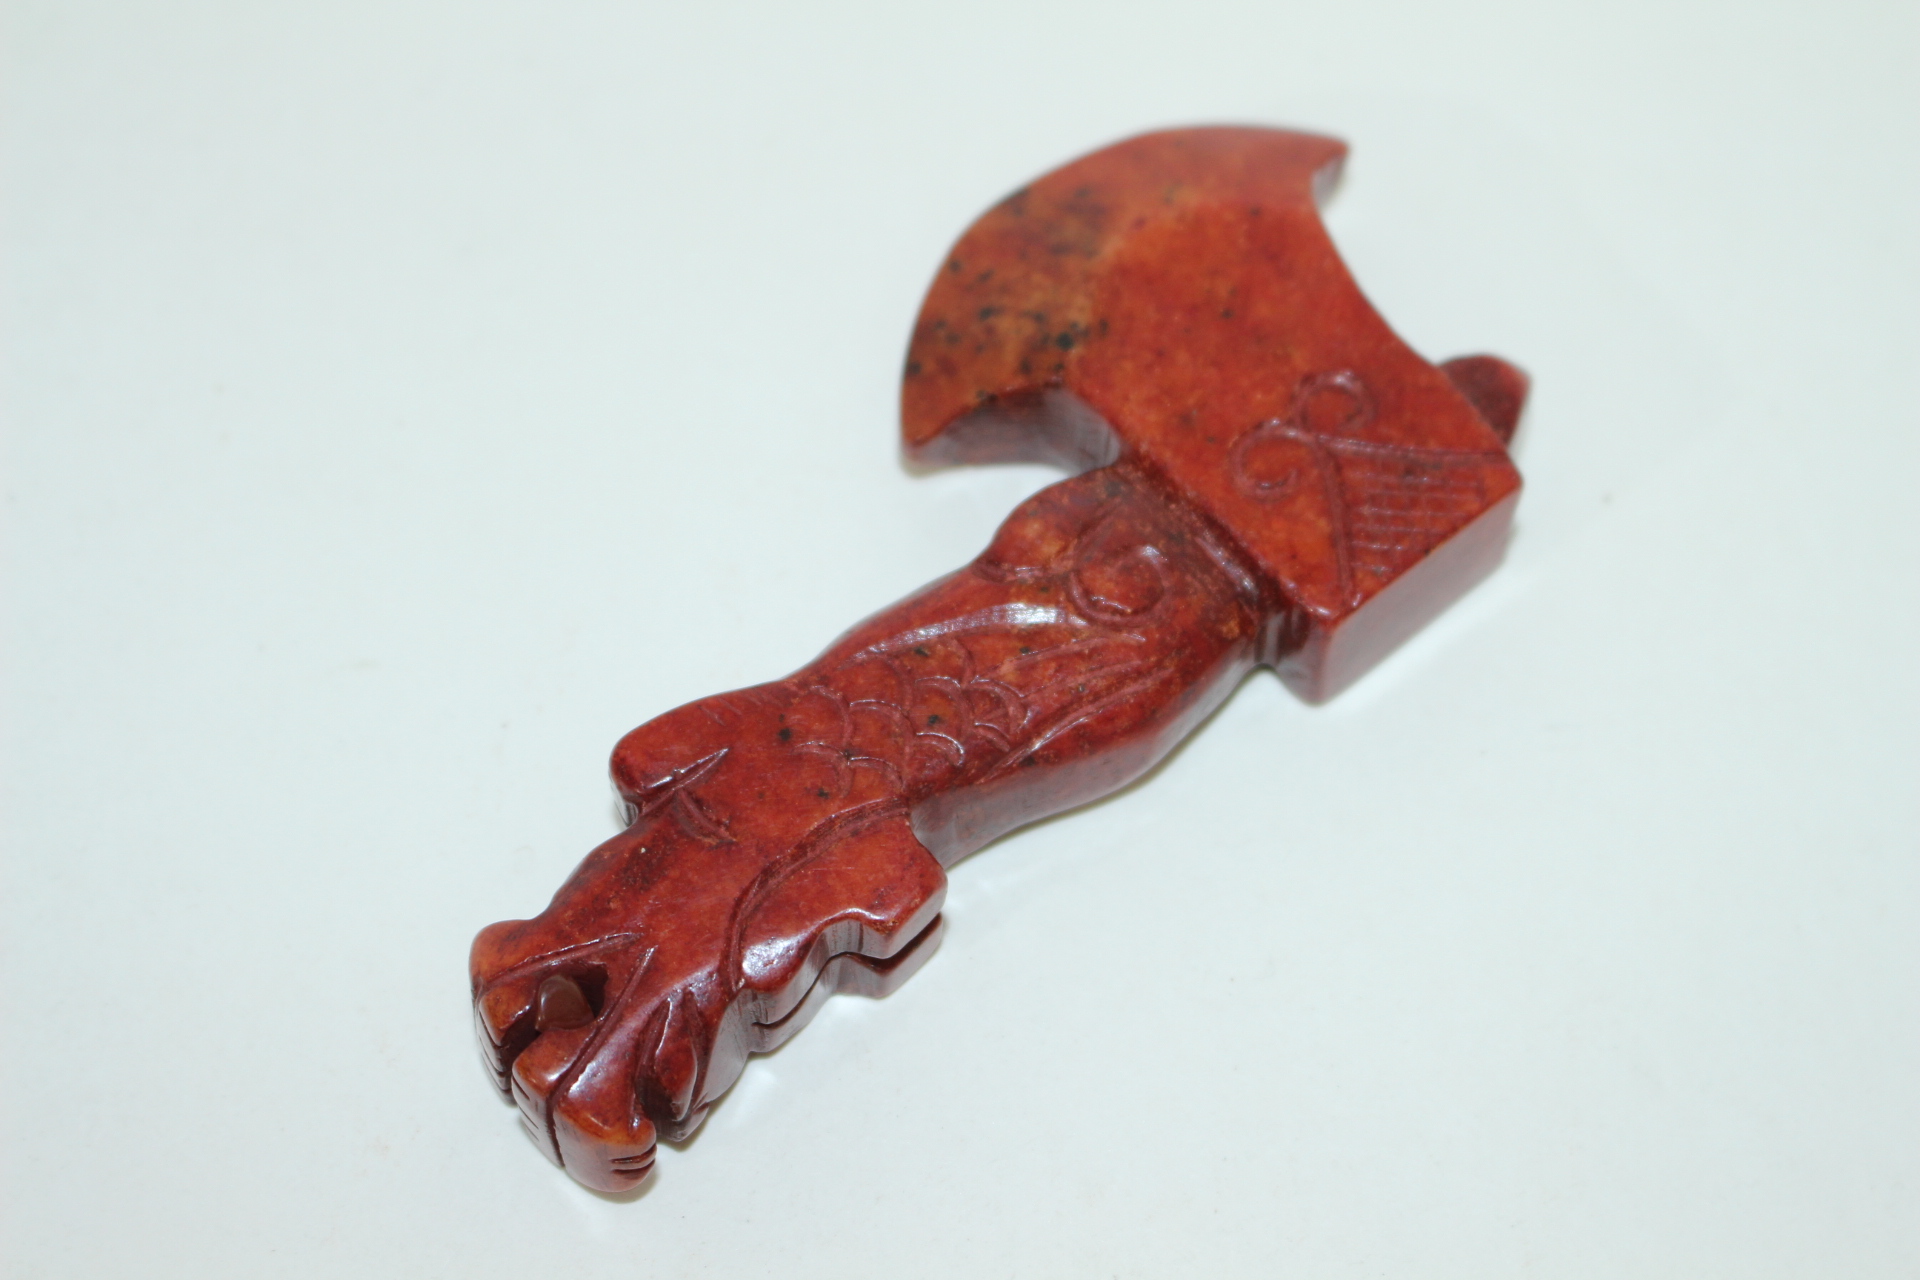 홍산문화-붉은 빛깔의 홍무뉘옥돌로된 도끼 옥노리개